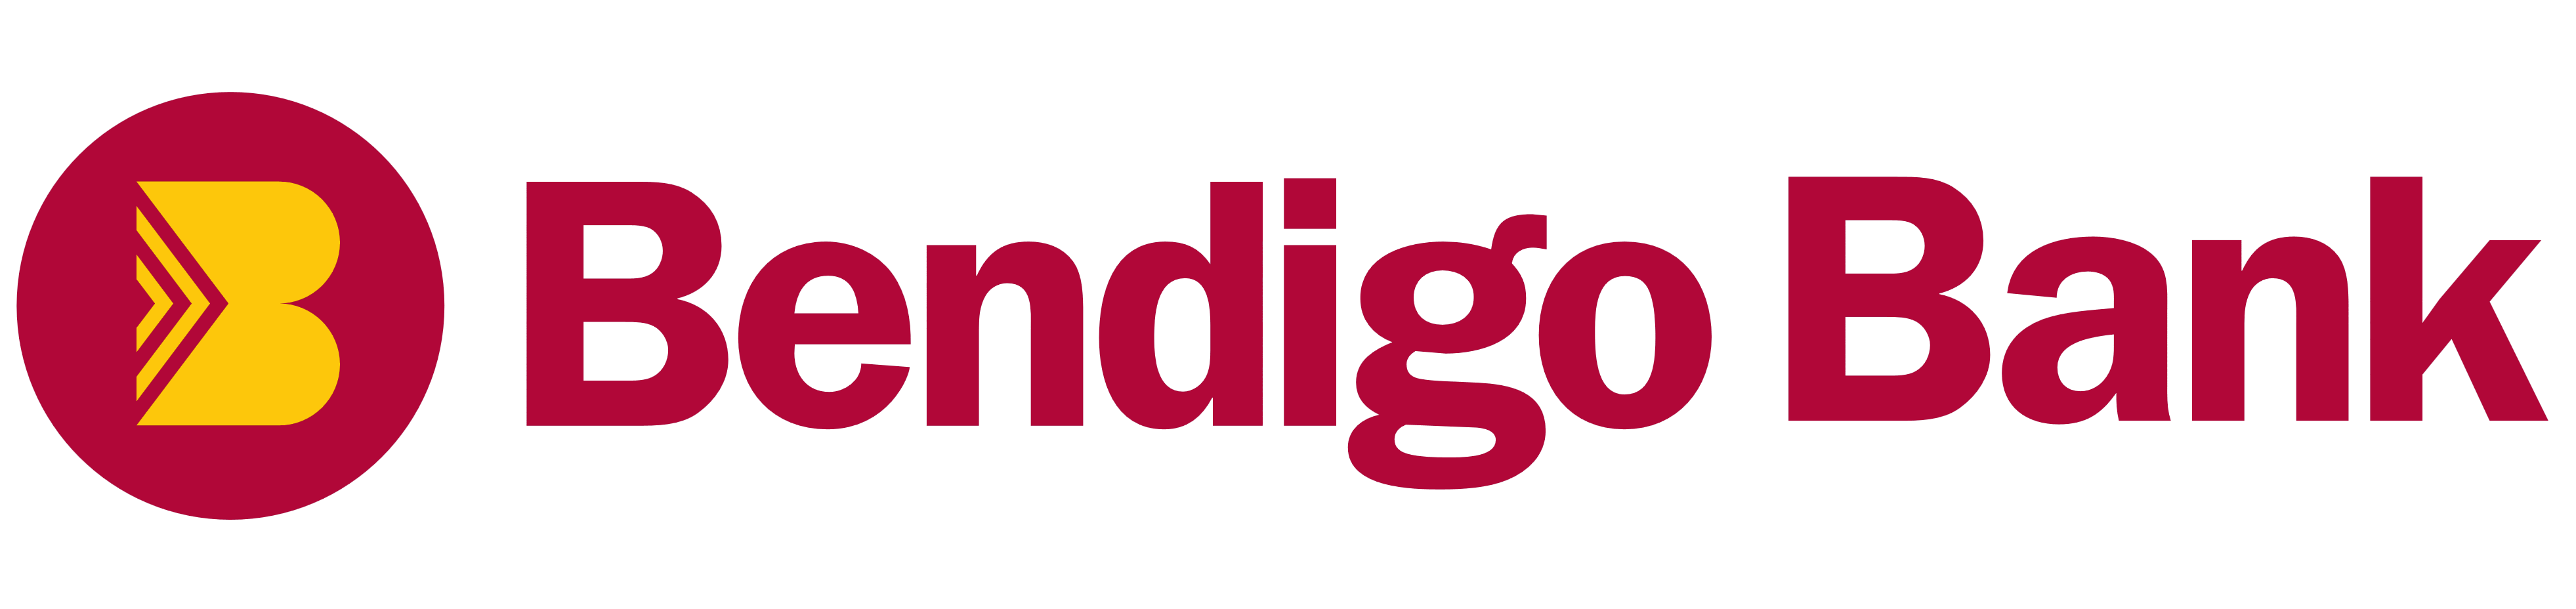 Bendigo Bank logo, logotype